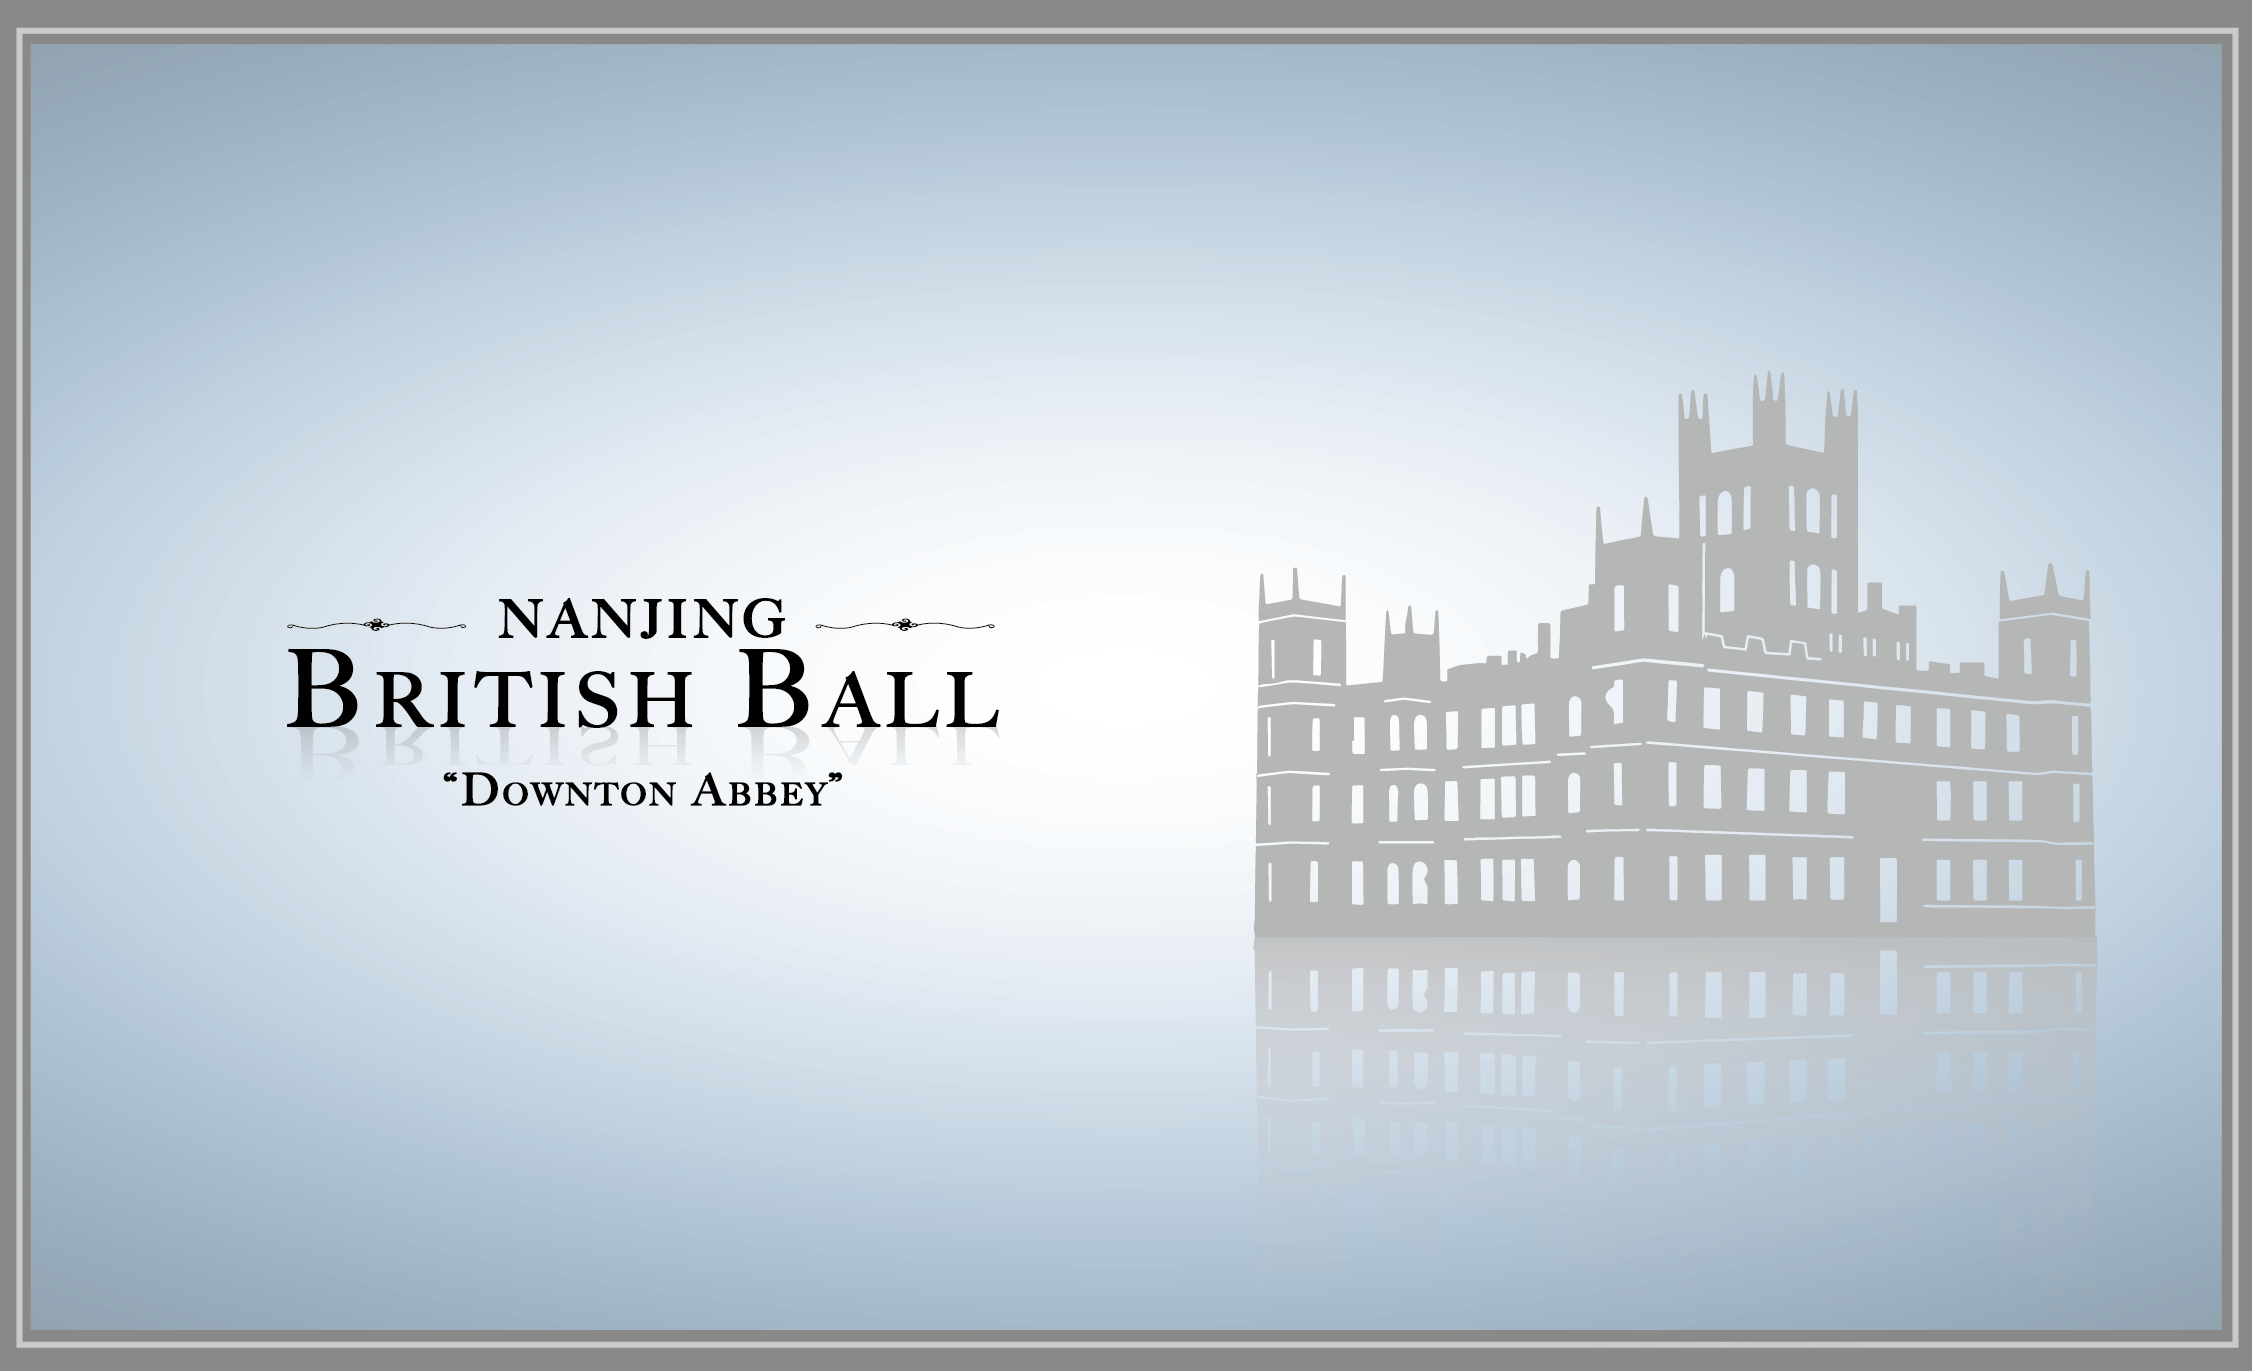 2022 年度南京英式慈善舞会 - British Ball 2022